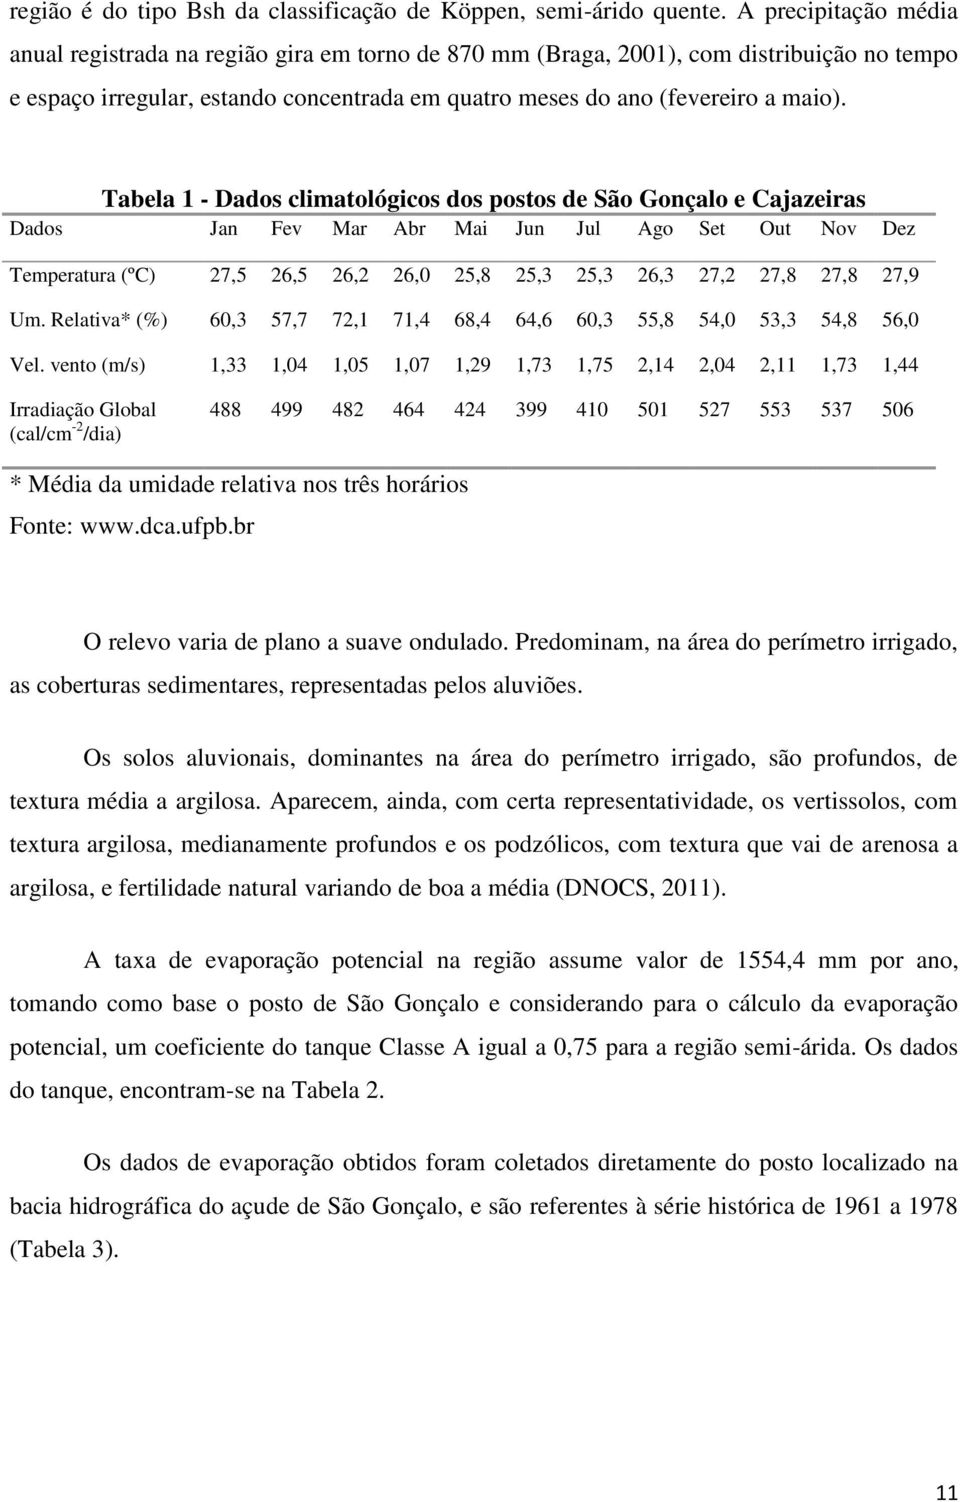 Tabela 1 - Dados climatológicos dos postos de São Gonçalo e Cajazeiras Dados Jan Fev Mar Abr Mai Jun Jul Ago Set Out Nov Dez Temperatura (ºC) 27,5 26,5 26,2 26,0 25,8 25,3 25,3 26,3 27,2 27,8 27,8